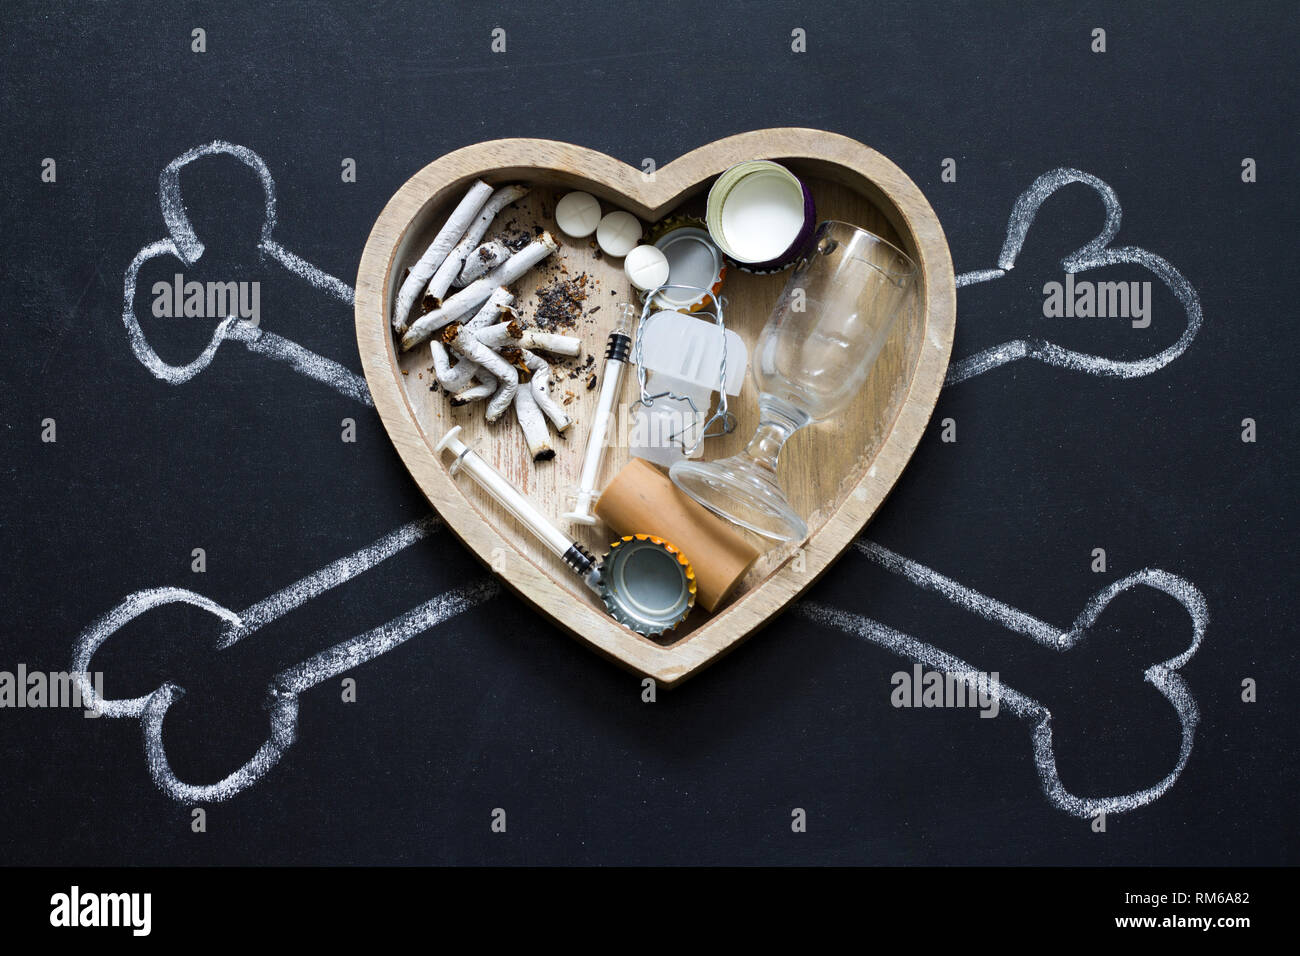 Le sostanze che provocano assuefazione sigarette alcool e droghe nel cuore e nelle ossa simbolo di pericolo Foto Stock